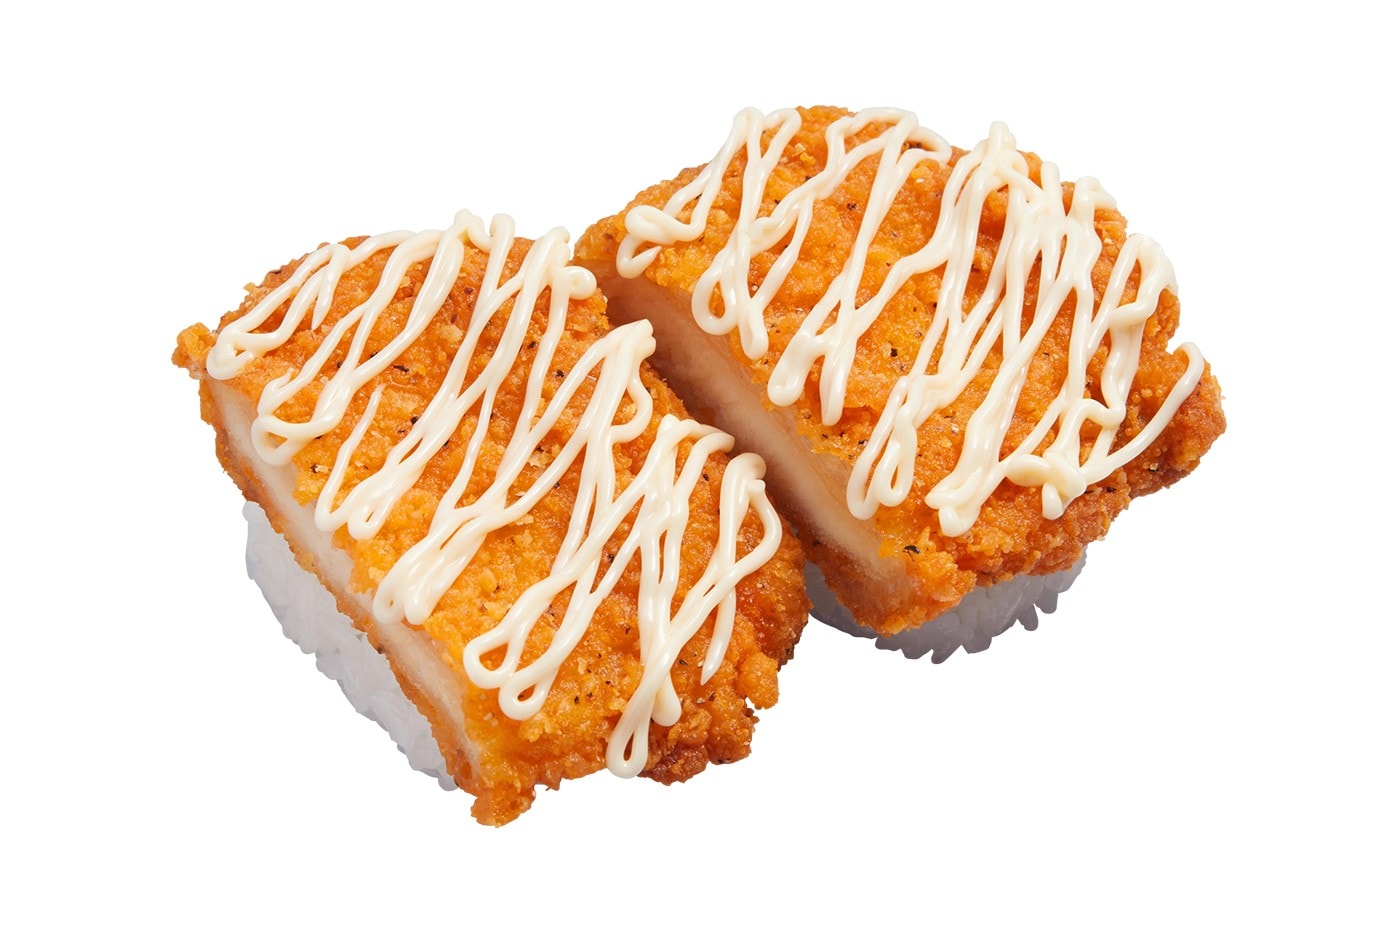 日本連鎖迴轉壽司 Kappa Sushi 推出全新「炸雞」握壽司